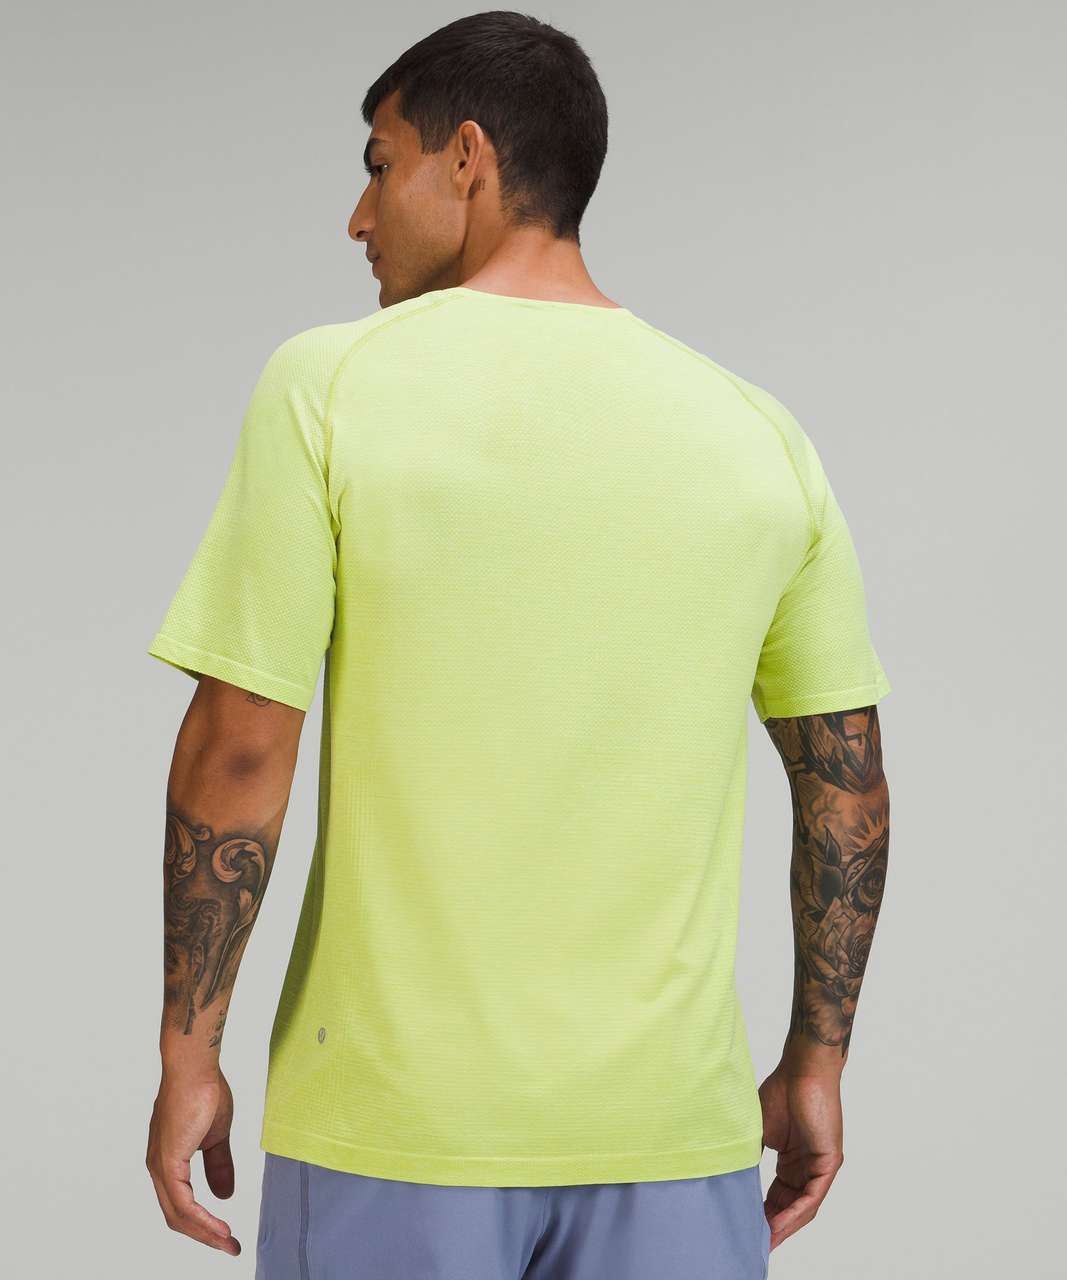 Lululemon Metal Vent Tech Short Sleeve Shirt 2.0 - Faded Zap / Wasabi